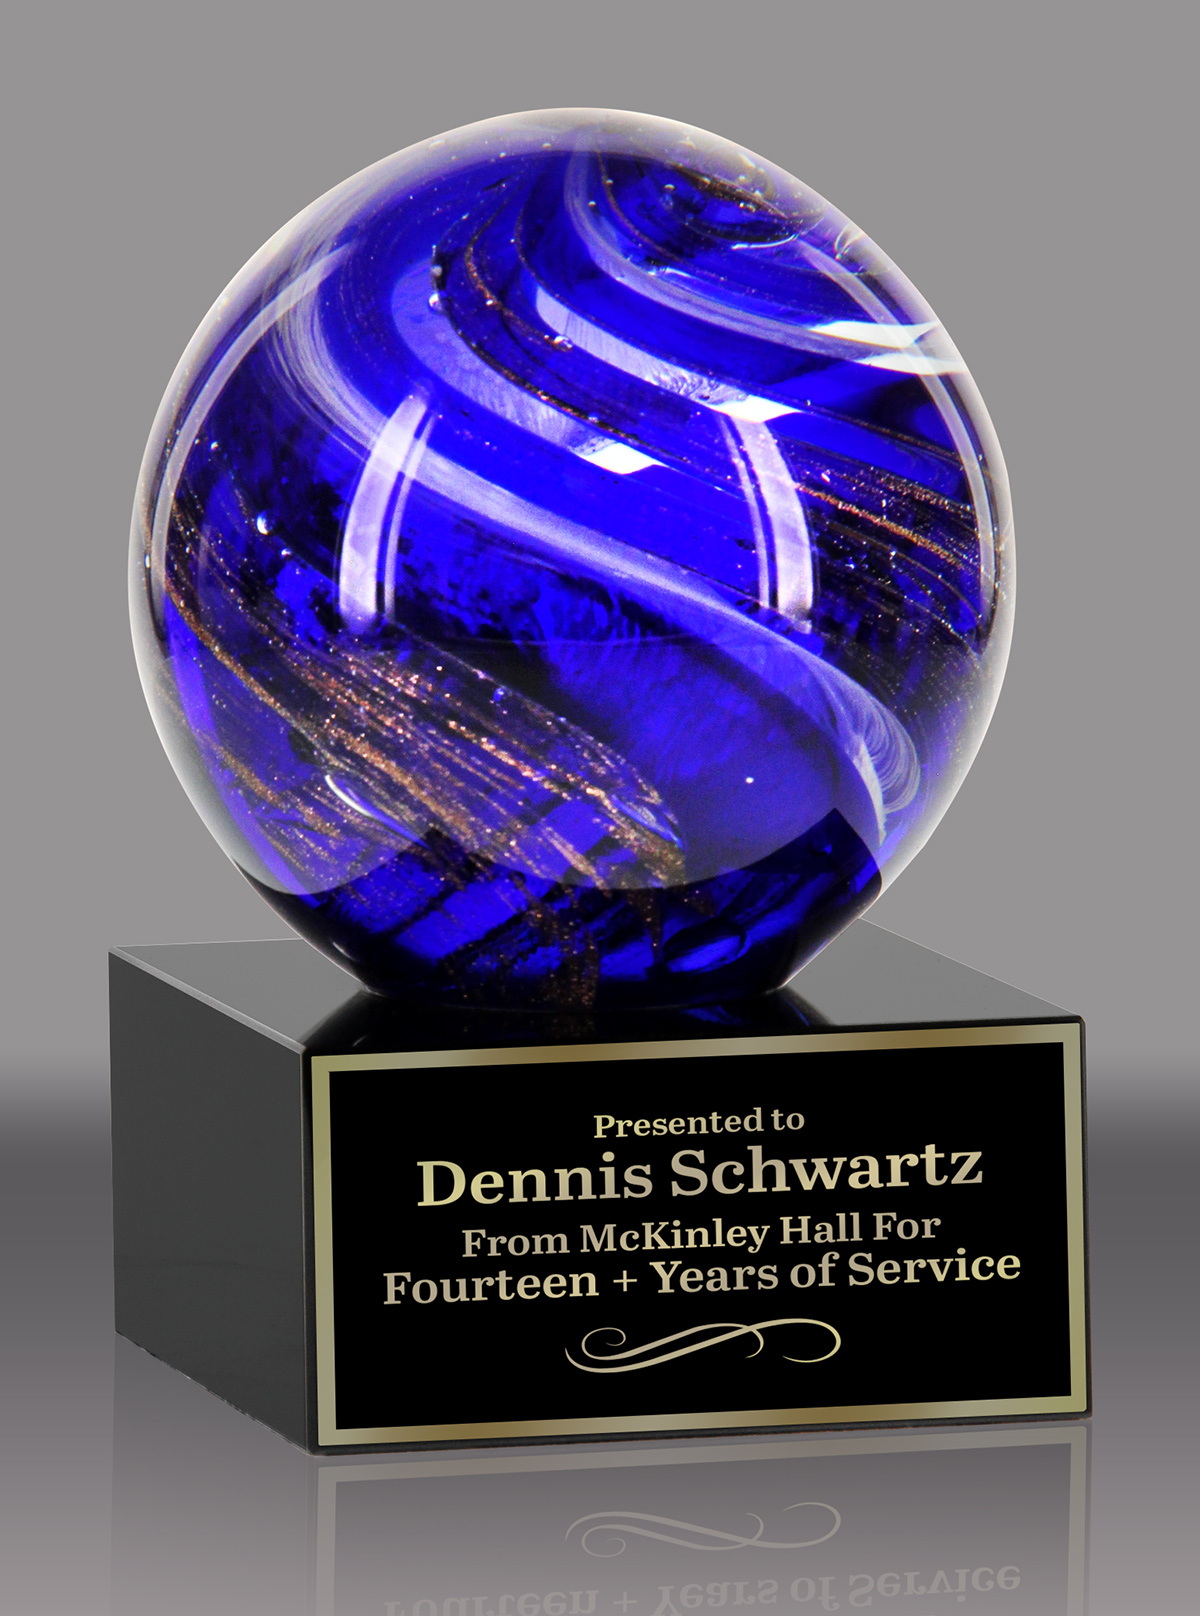 Globe Art Glass Award